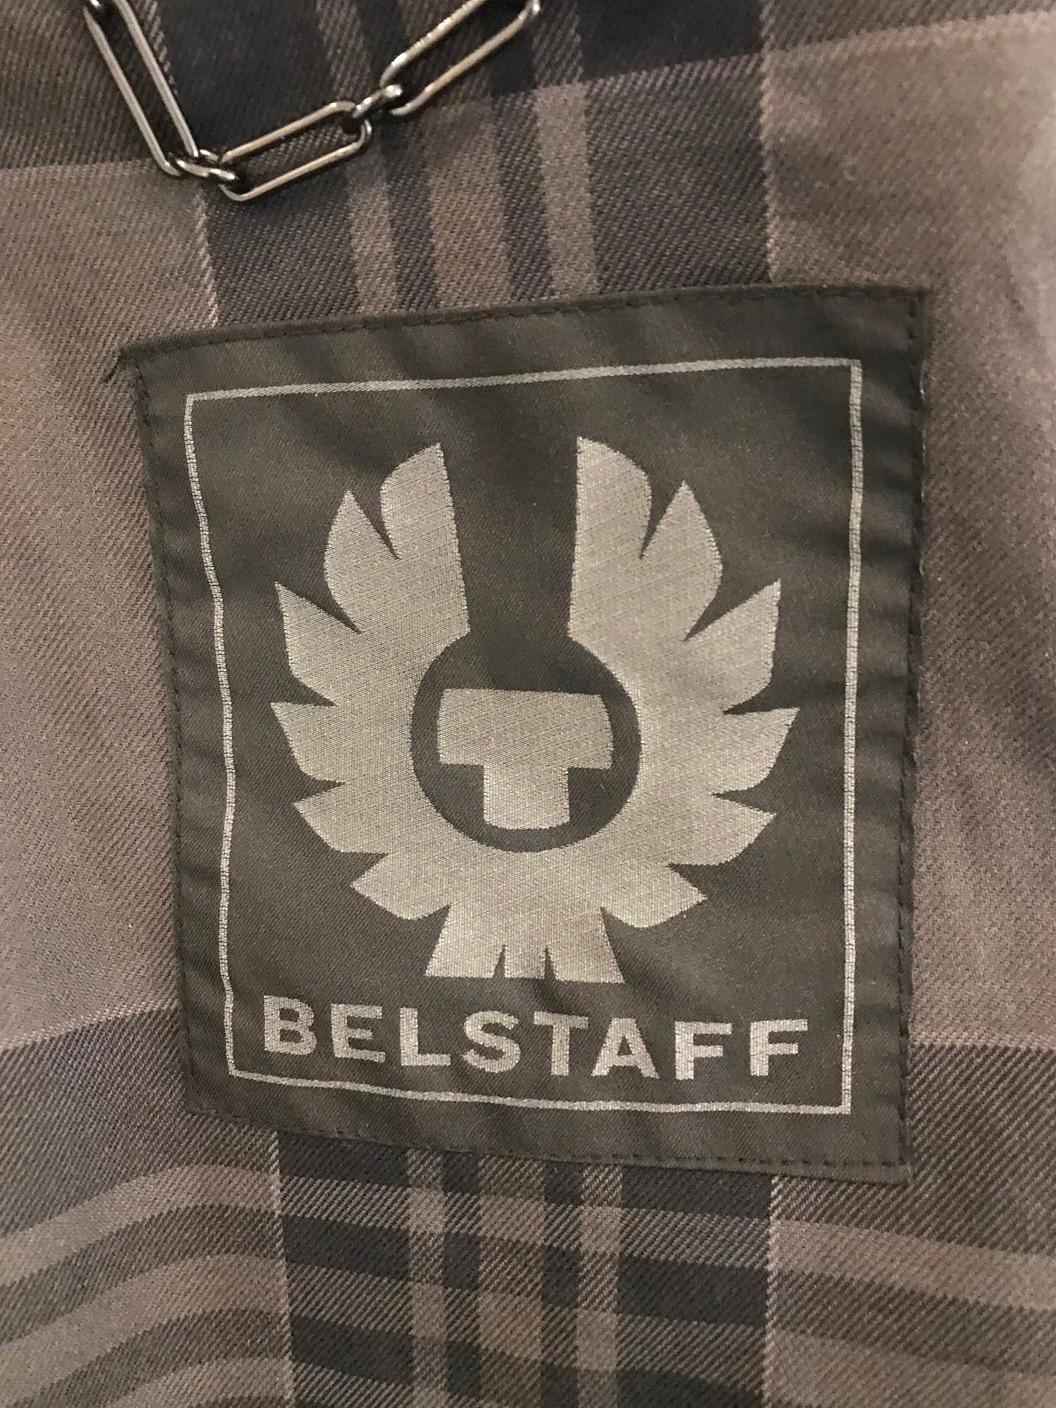 Belstaff Trialmaster Leather Jacket For Sale 1